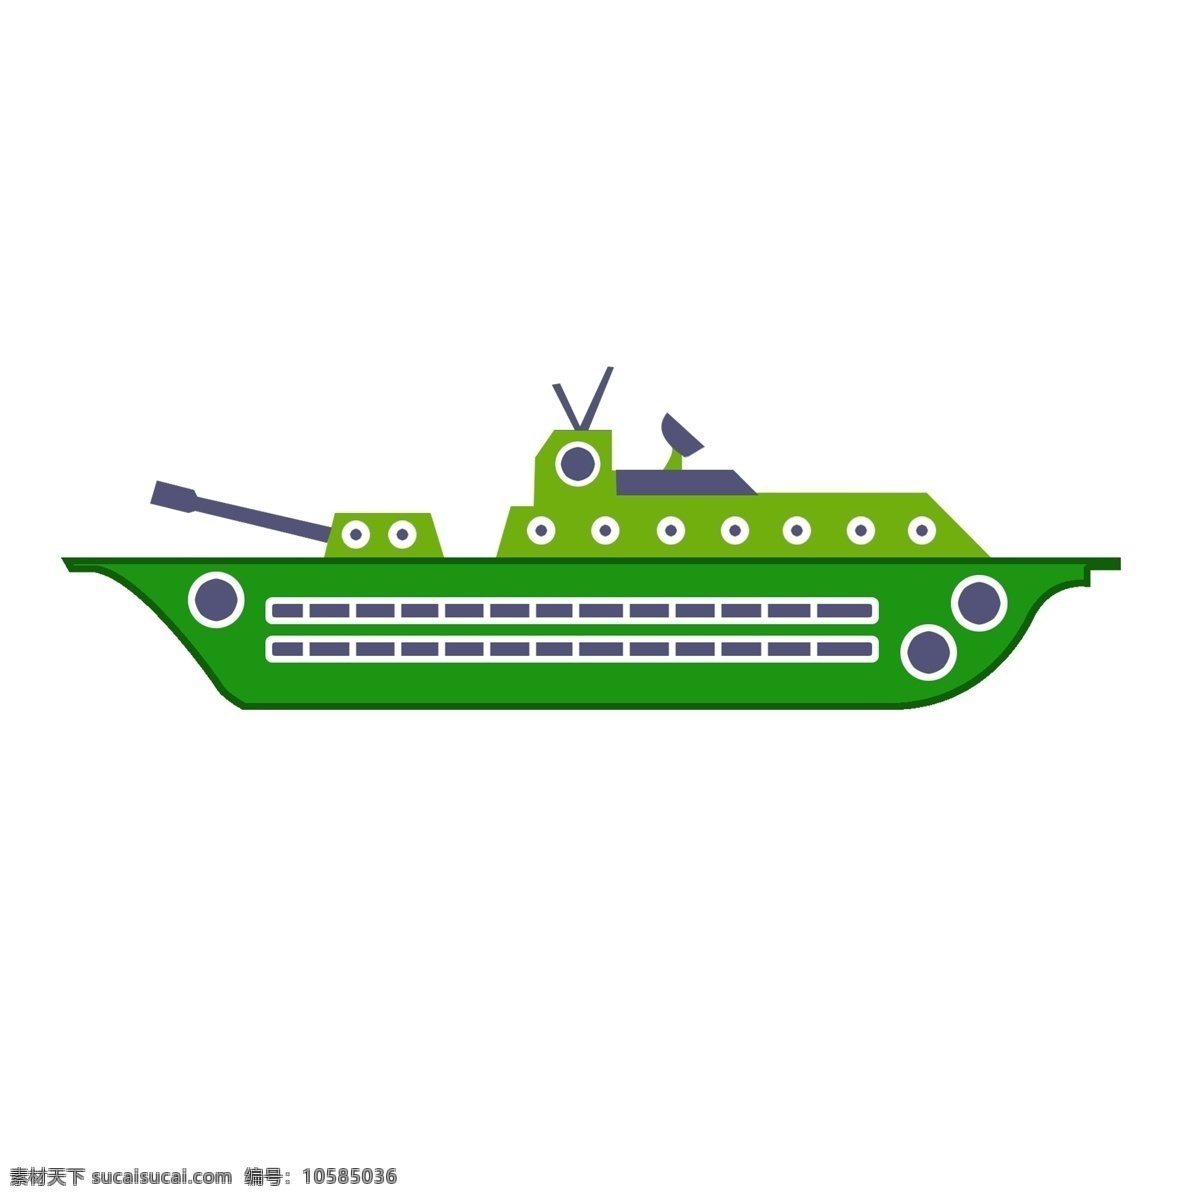 军事 绿色 军舰 插画 绿色的军舰 卡通插画 军事插画 军事产品 军事用品 军用物品 中国的军舰